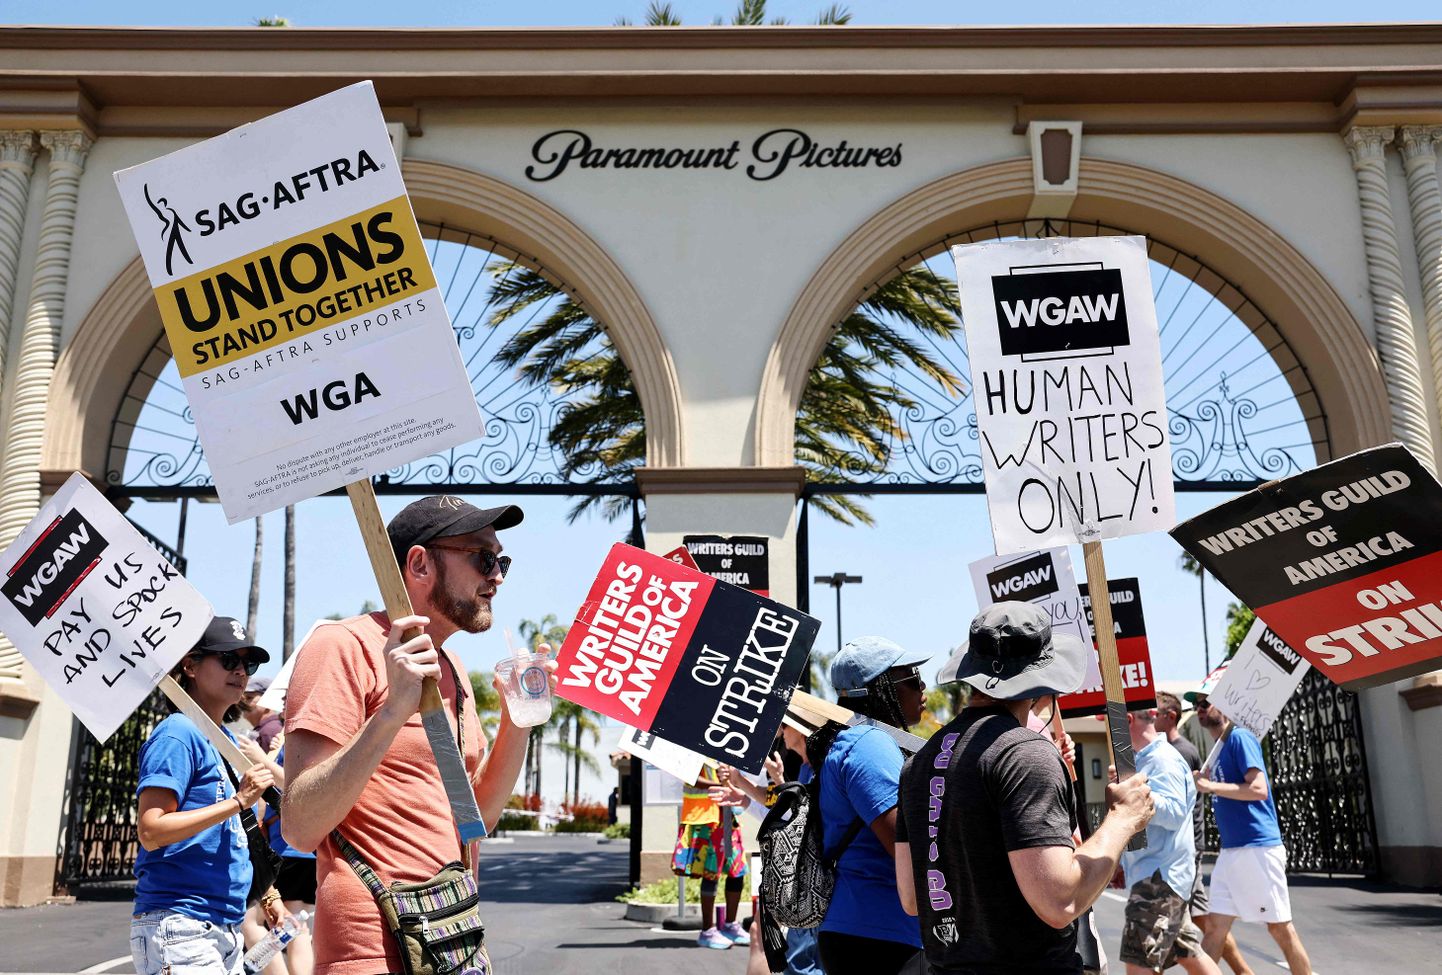 Члены профсоюза голливудских актеров SAG-AFTRA могут объявить забастовку, что приведет к полной остановке всех голливудских производств